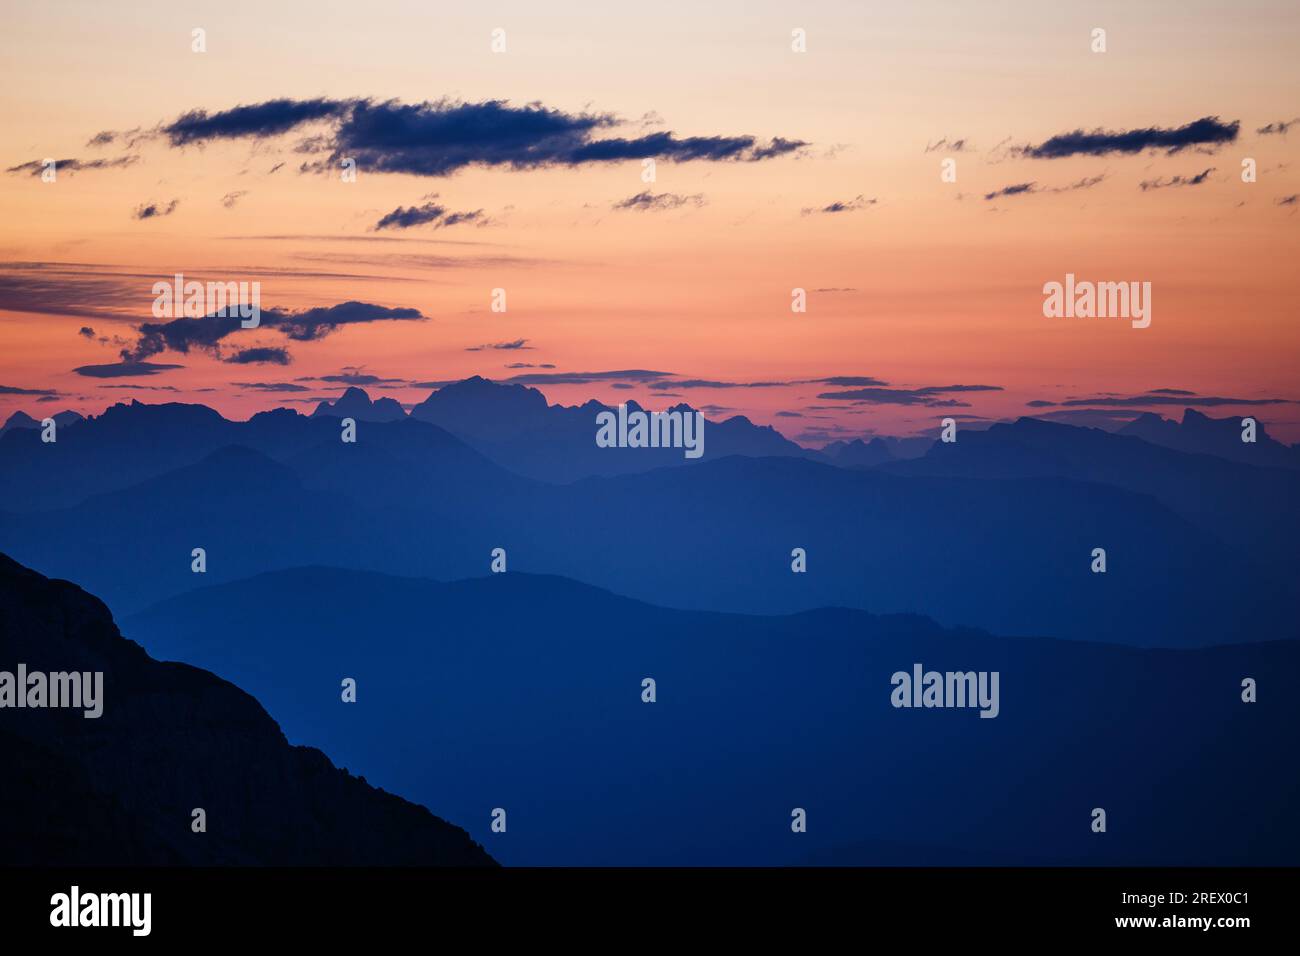 Profils de montagne, silhouettes, couches à l'aube. Ciel rougeâtre. Profils des sommets Dolomites à l'horizon. Alpes italiennes. Europe. Banque D'Images